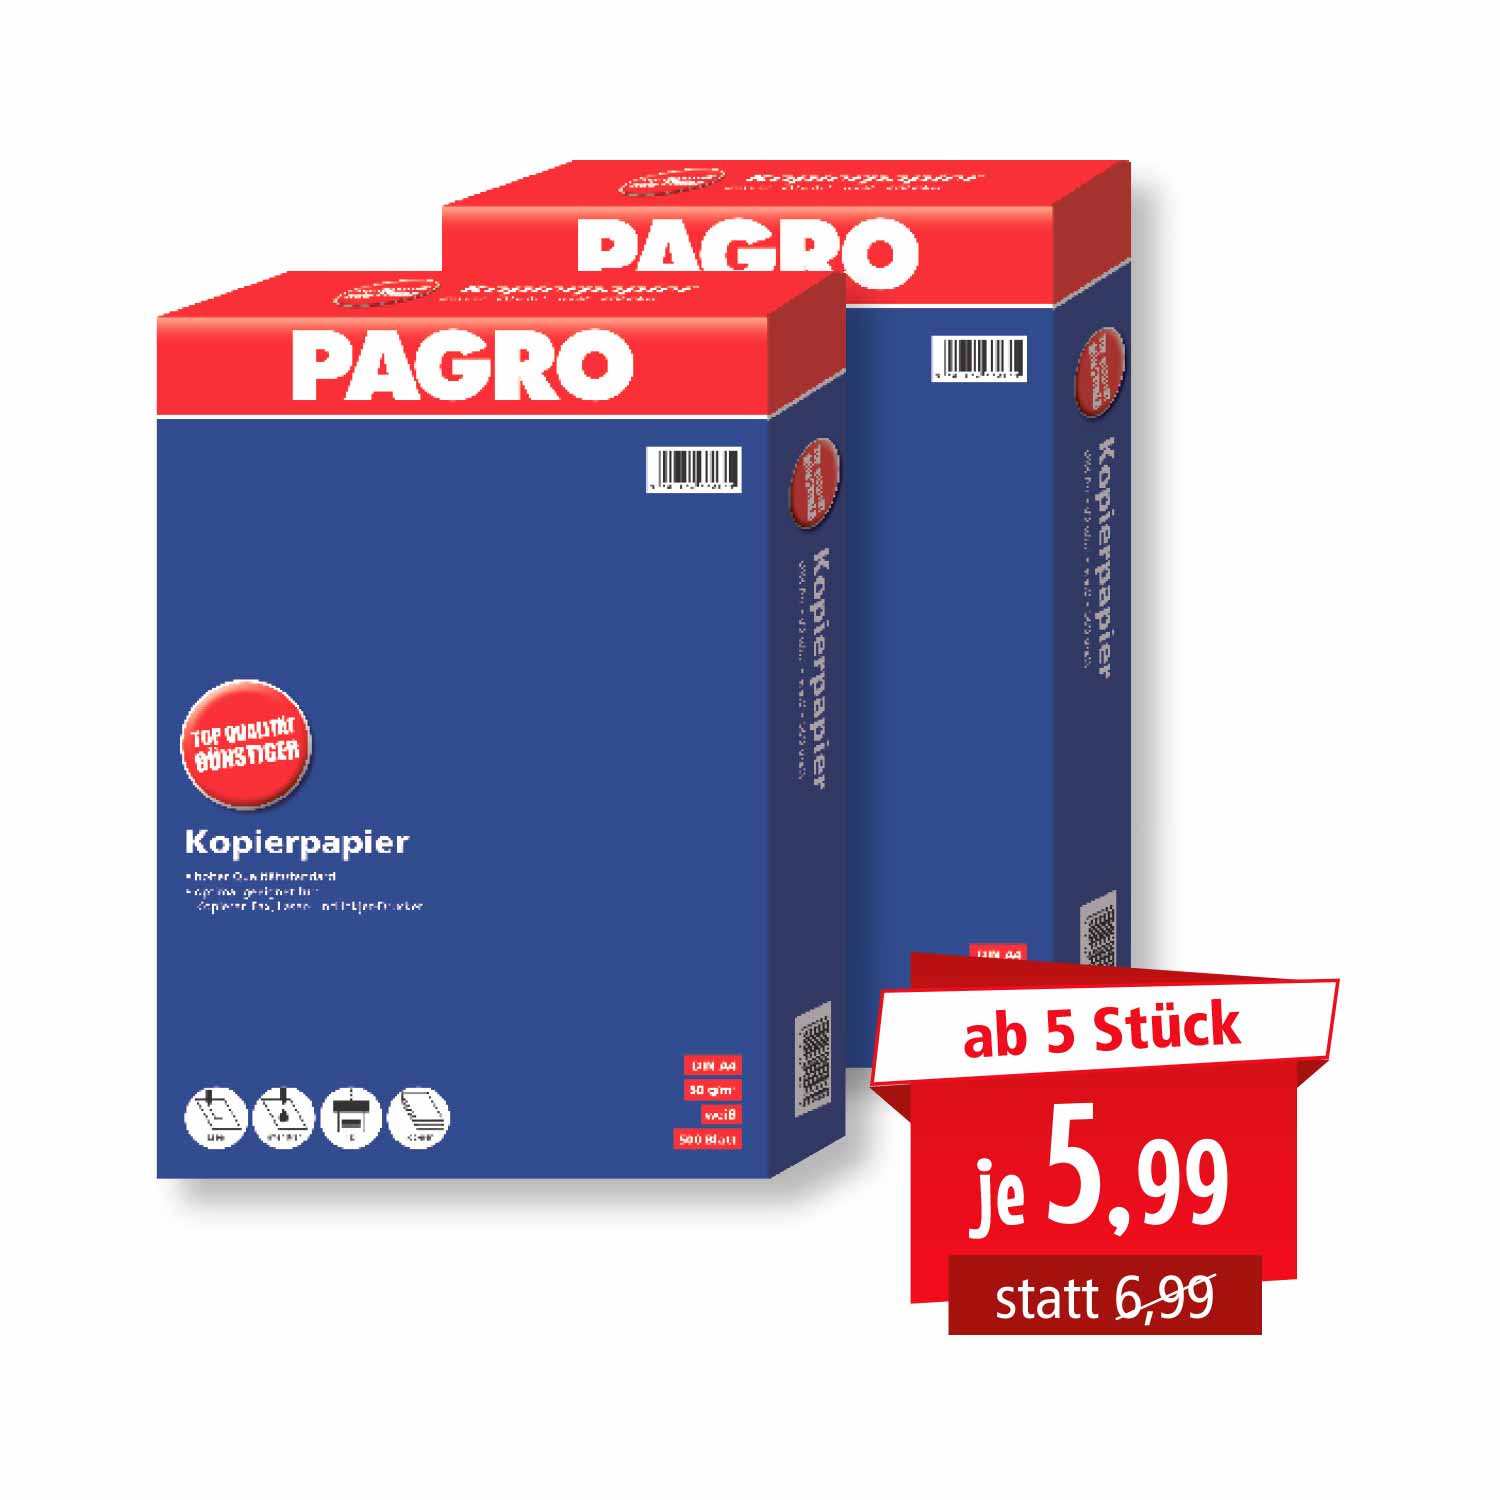 toezicht houden op Plaats klauw Kopierpapier Pagro DIN A4 500 Blatt